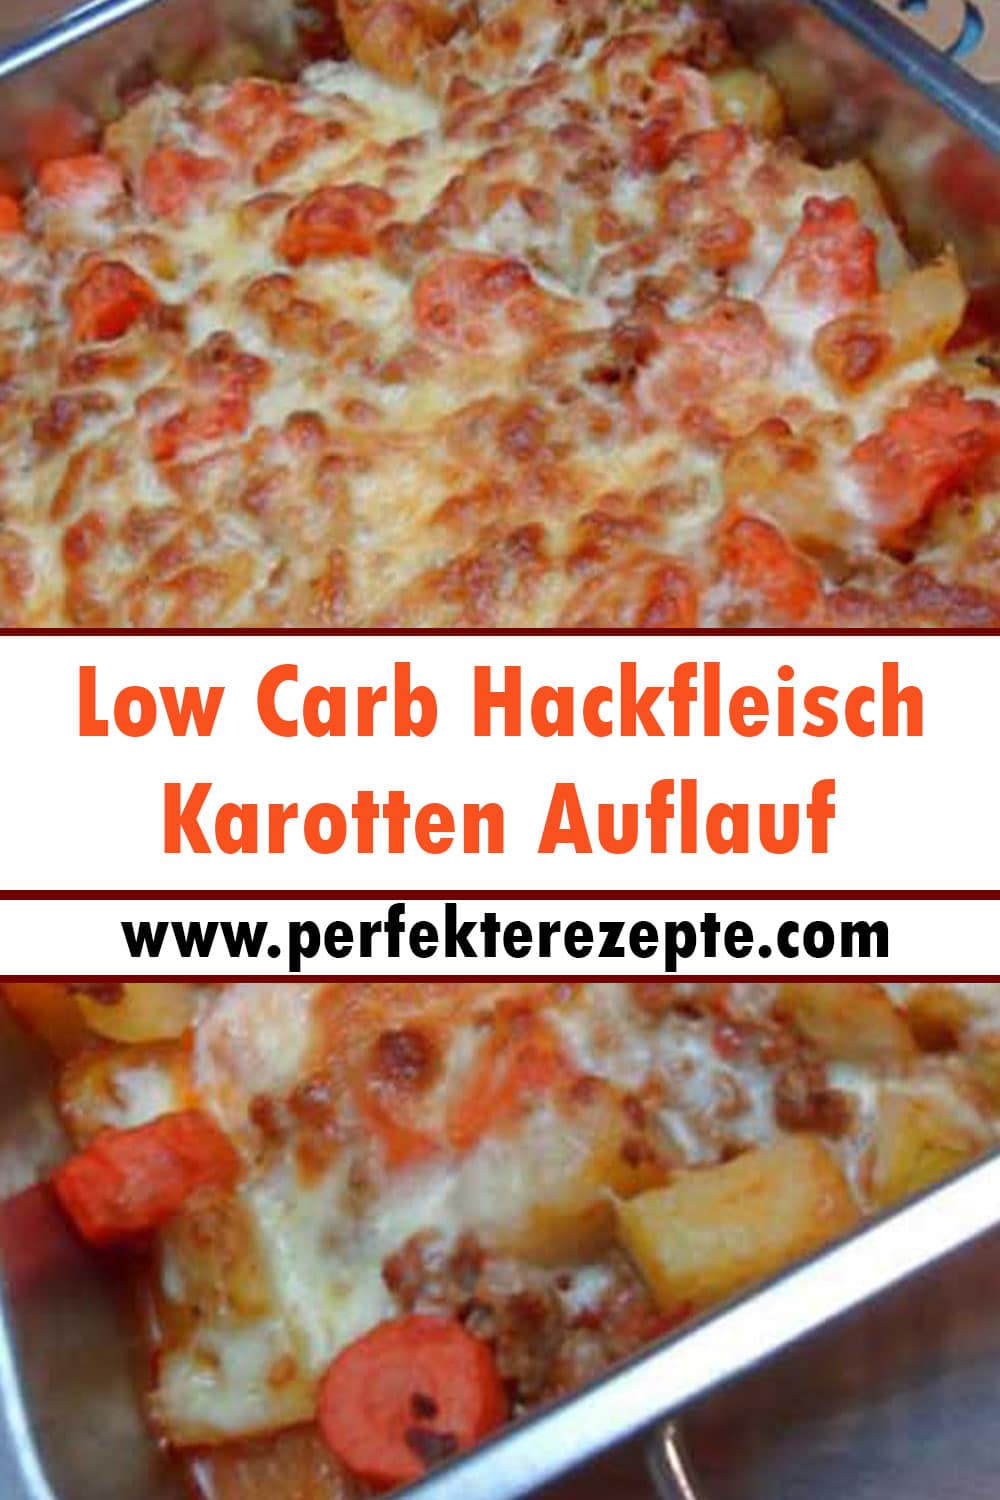 Low Carb Hackfleisch Karotten Auflauf Rezept